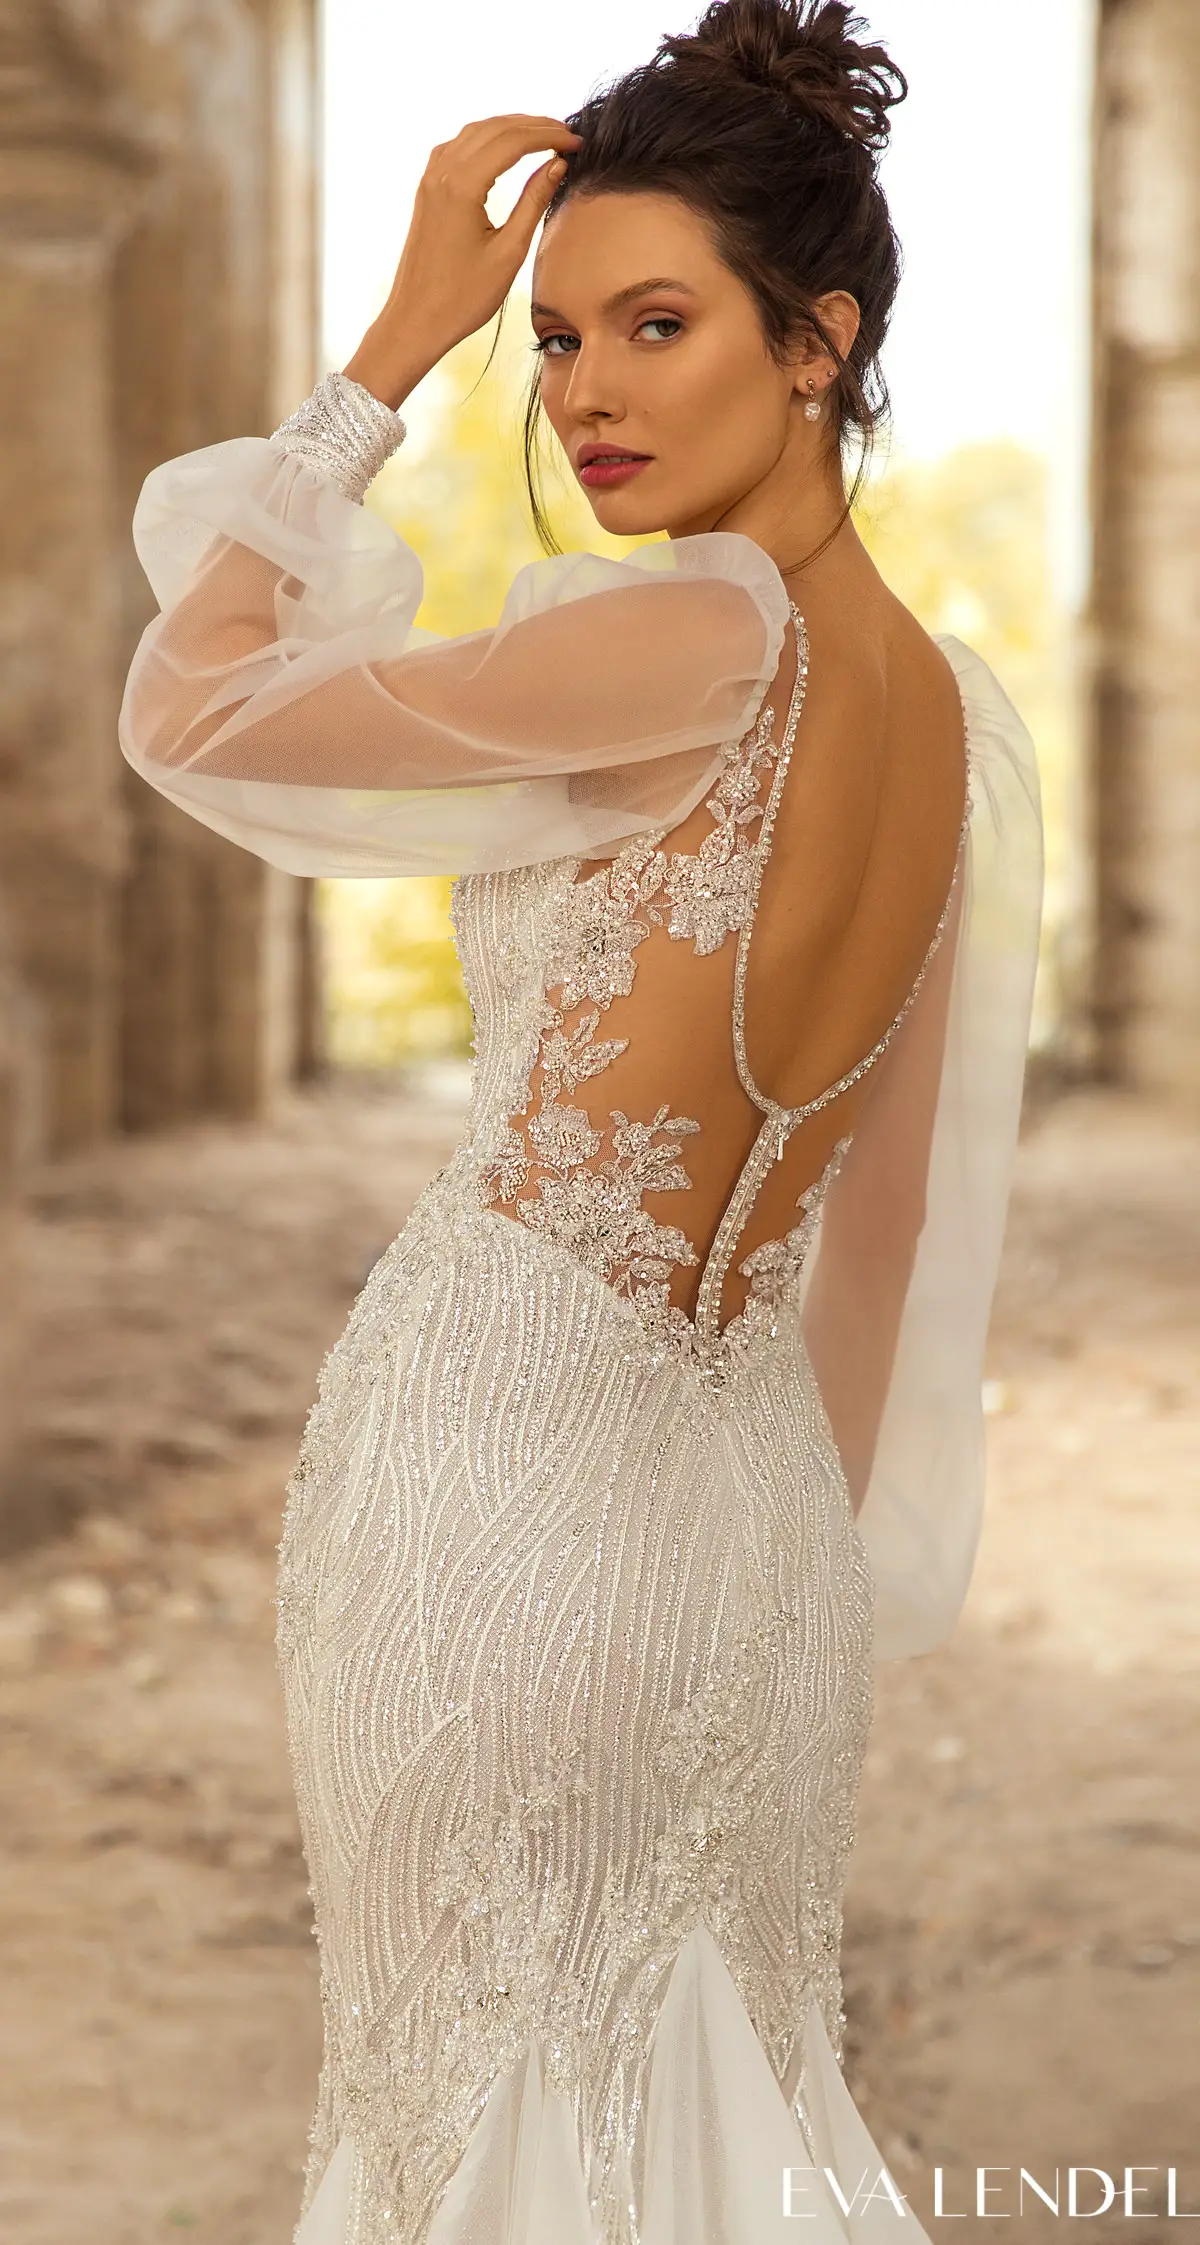 Eva Lendel Wedding Dresses 2021- Golden Hour Collection -Lennox